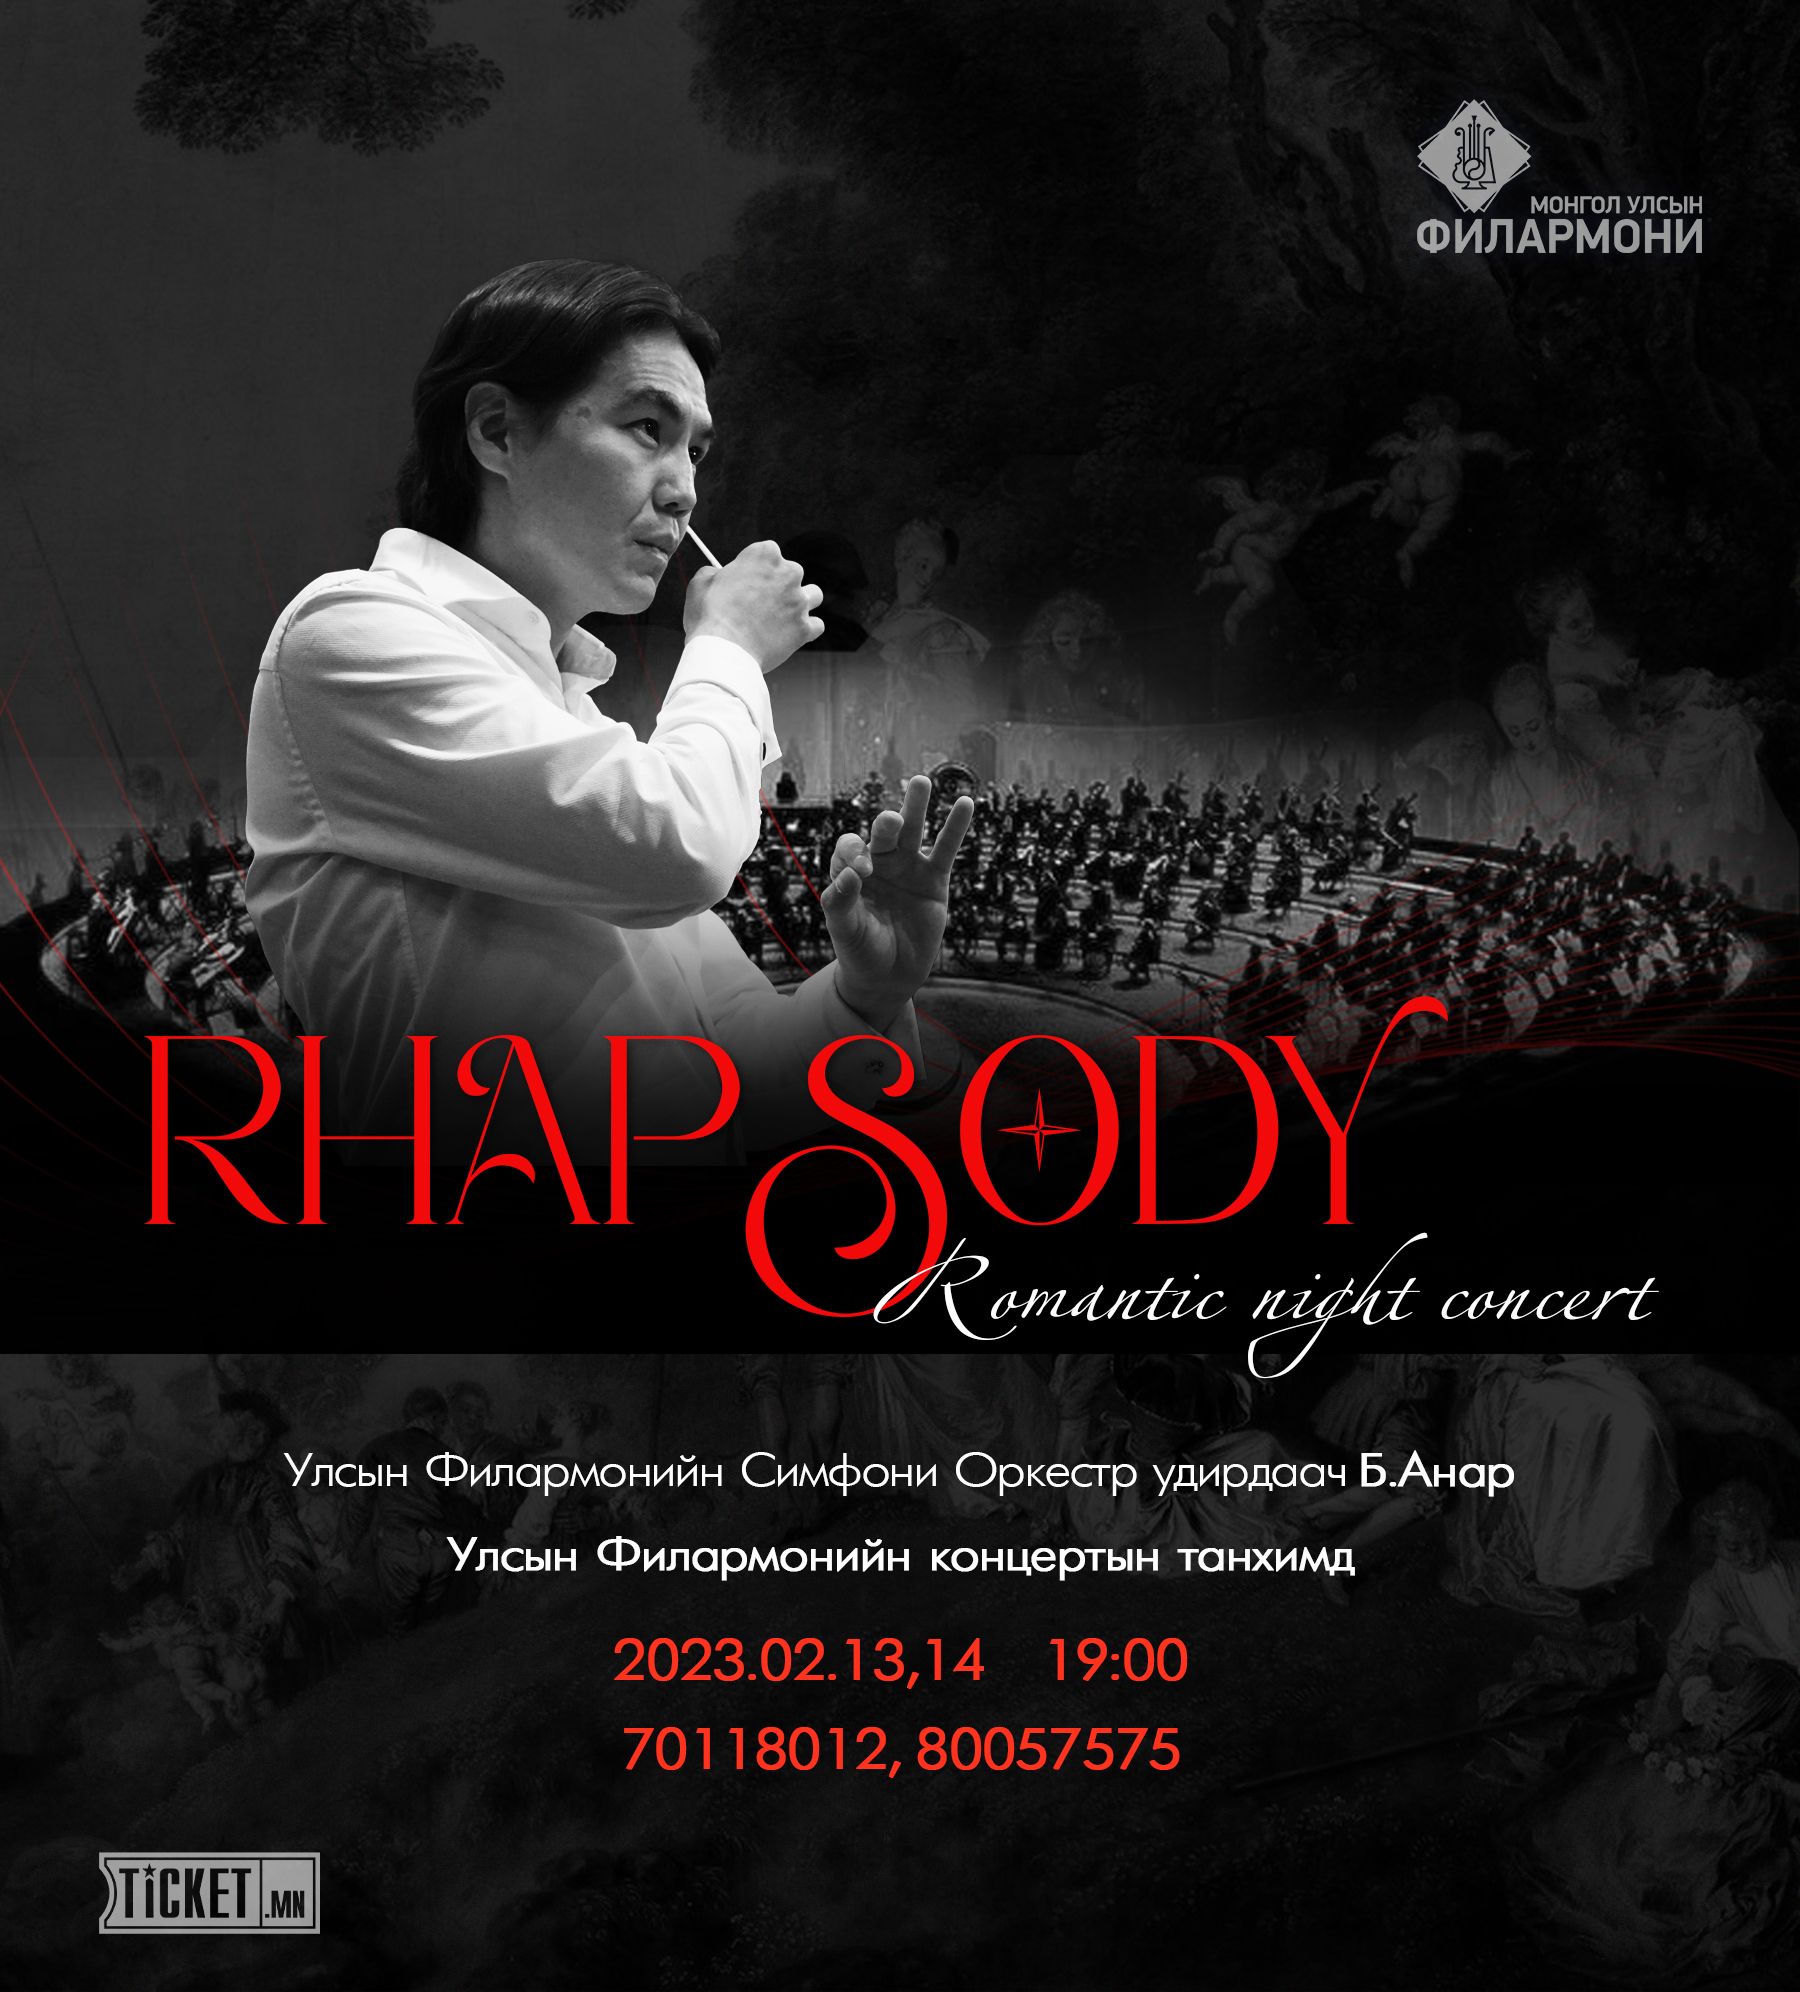 "RHAPSODY" Romantic Night Concert